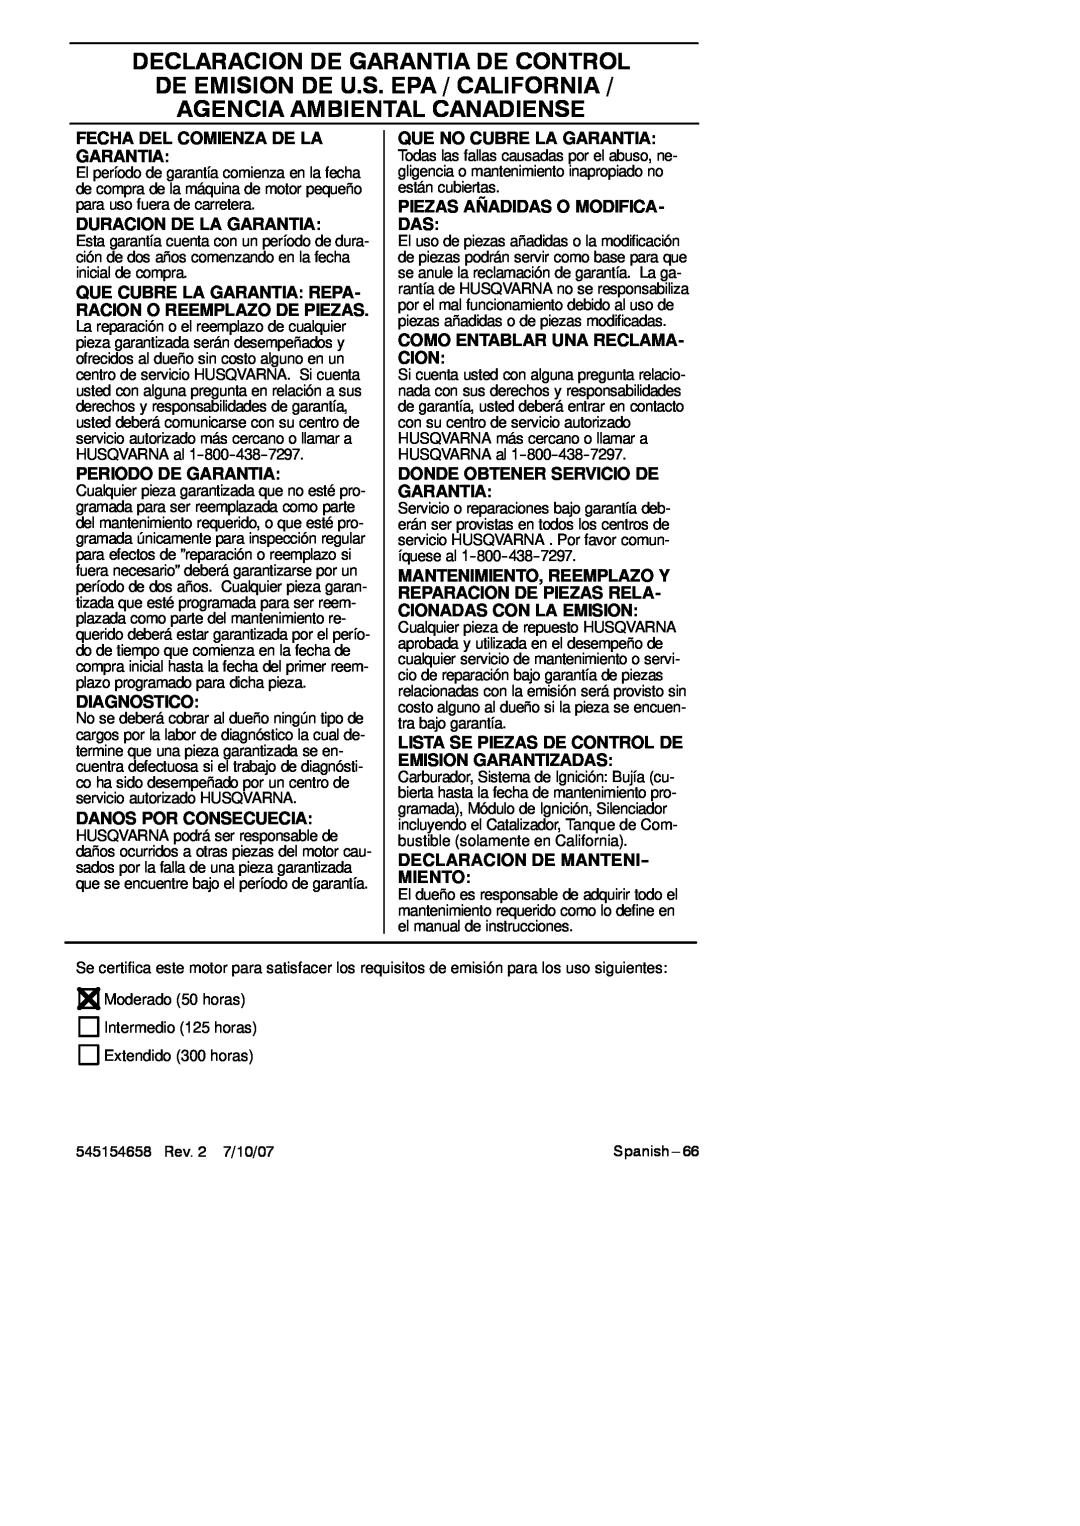 Husqvarna 125BVX Series manual Fecha Del Comienza De La Garantia, Duracion De La Garantia, Periodo De Garantia, Diagnostico 